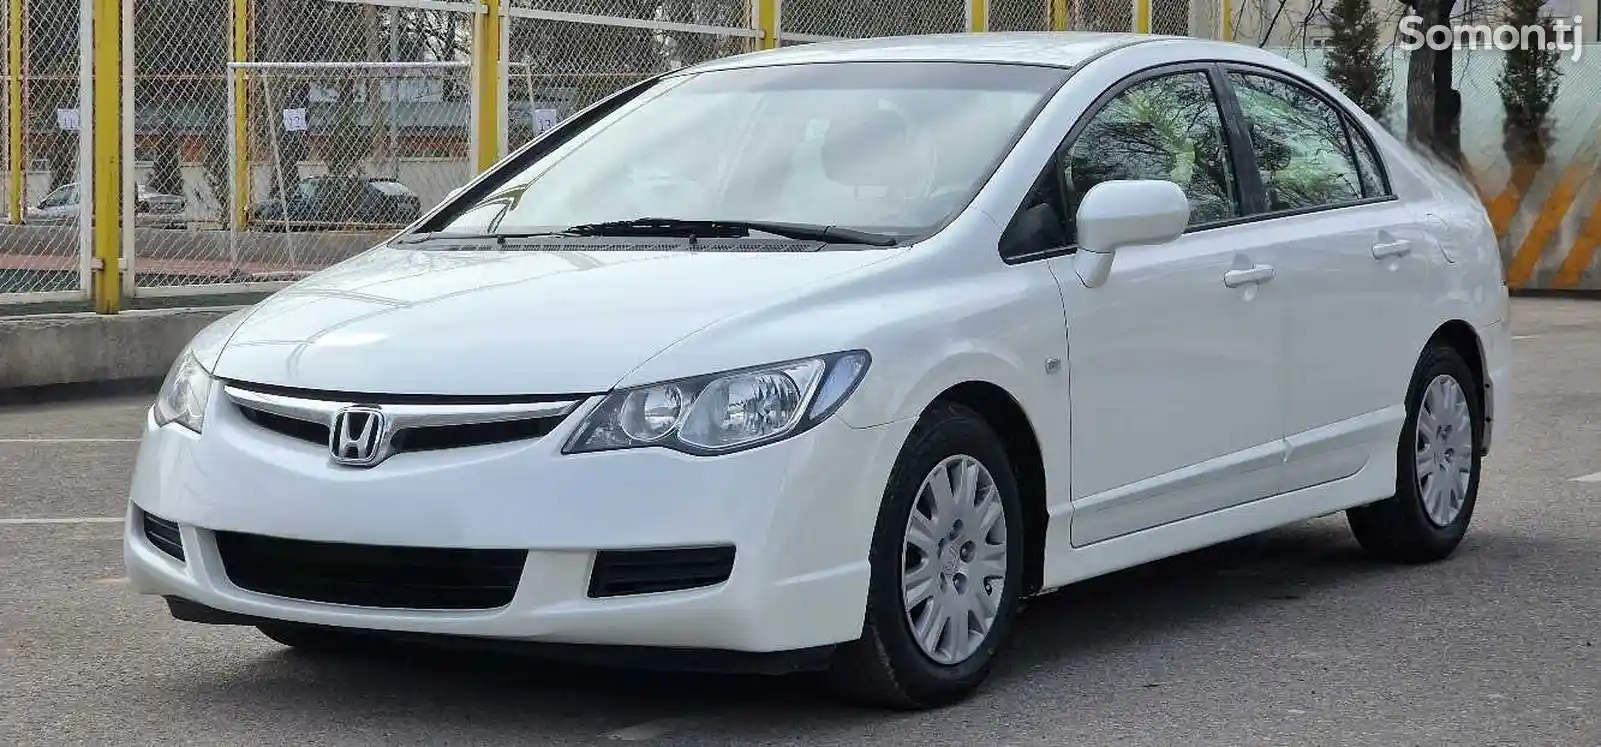 Honda Civic, 2008-2